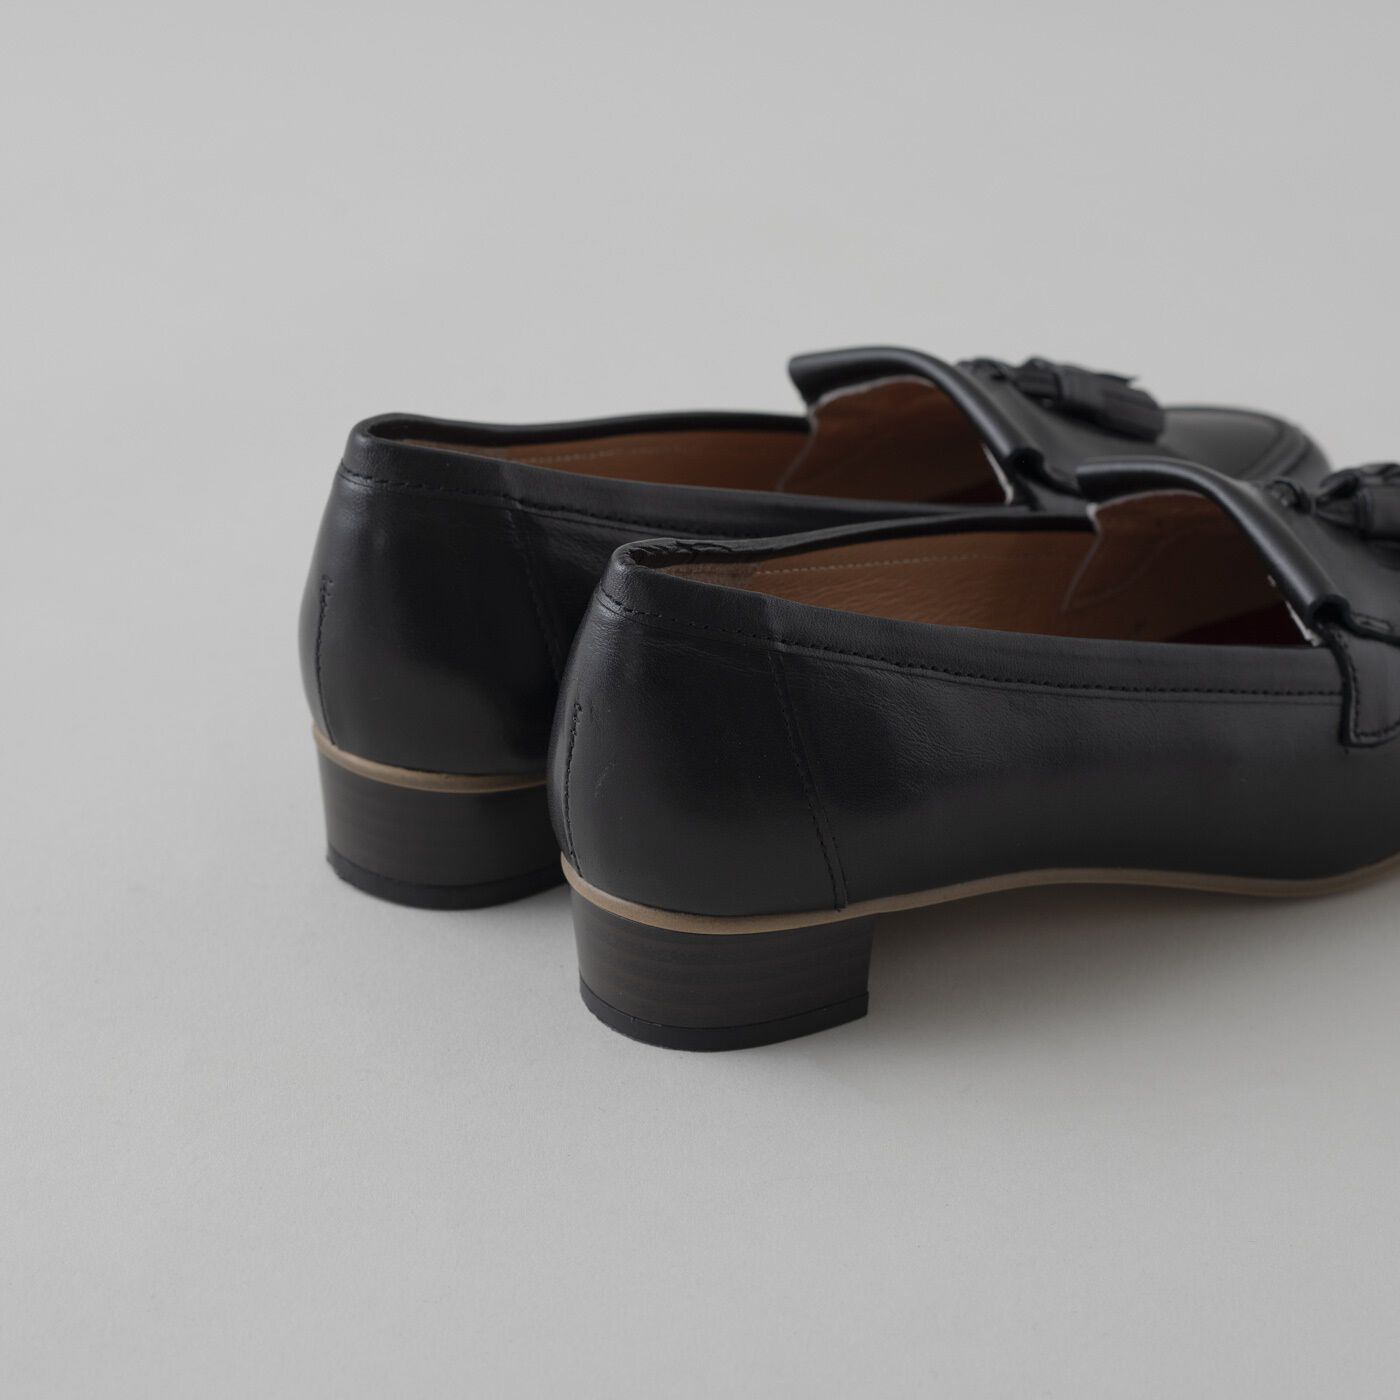 ＆Stories|長田の靴メーカーと作った　職人本革のタッセルローファー〈ブラック〉|ほどよいヒール高と疲れにくいクッション性で、機能面もばっちり。